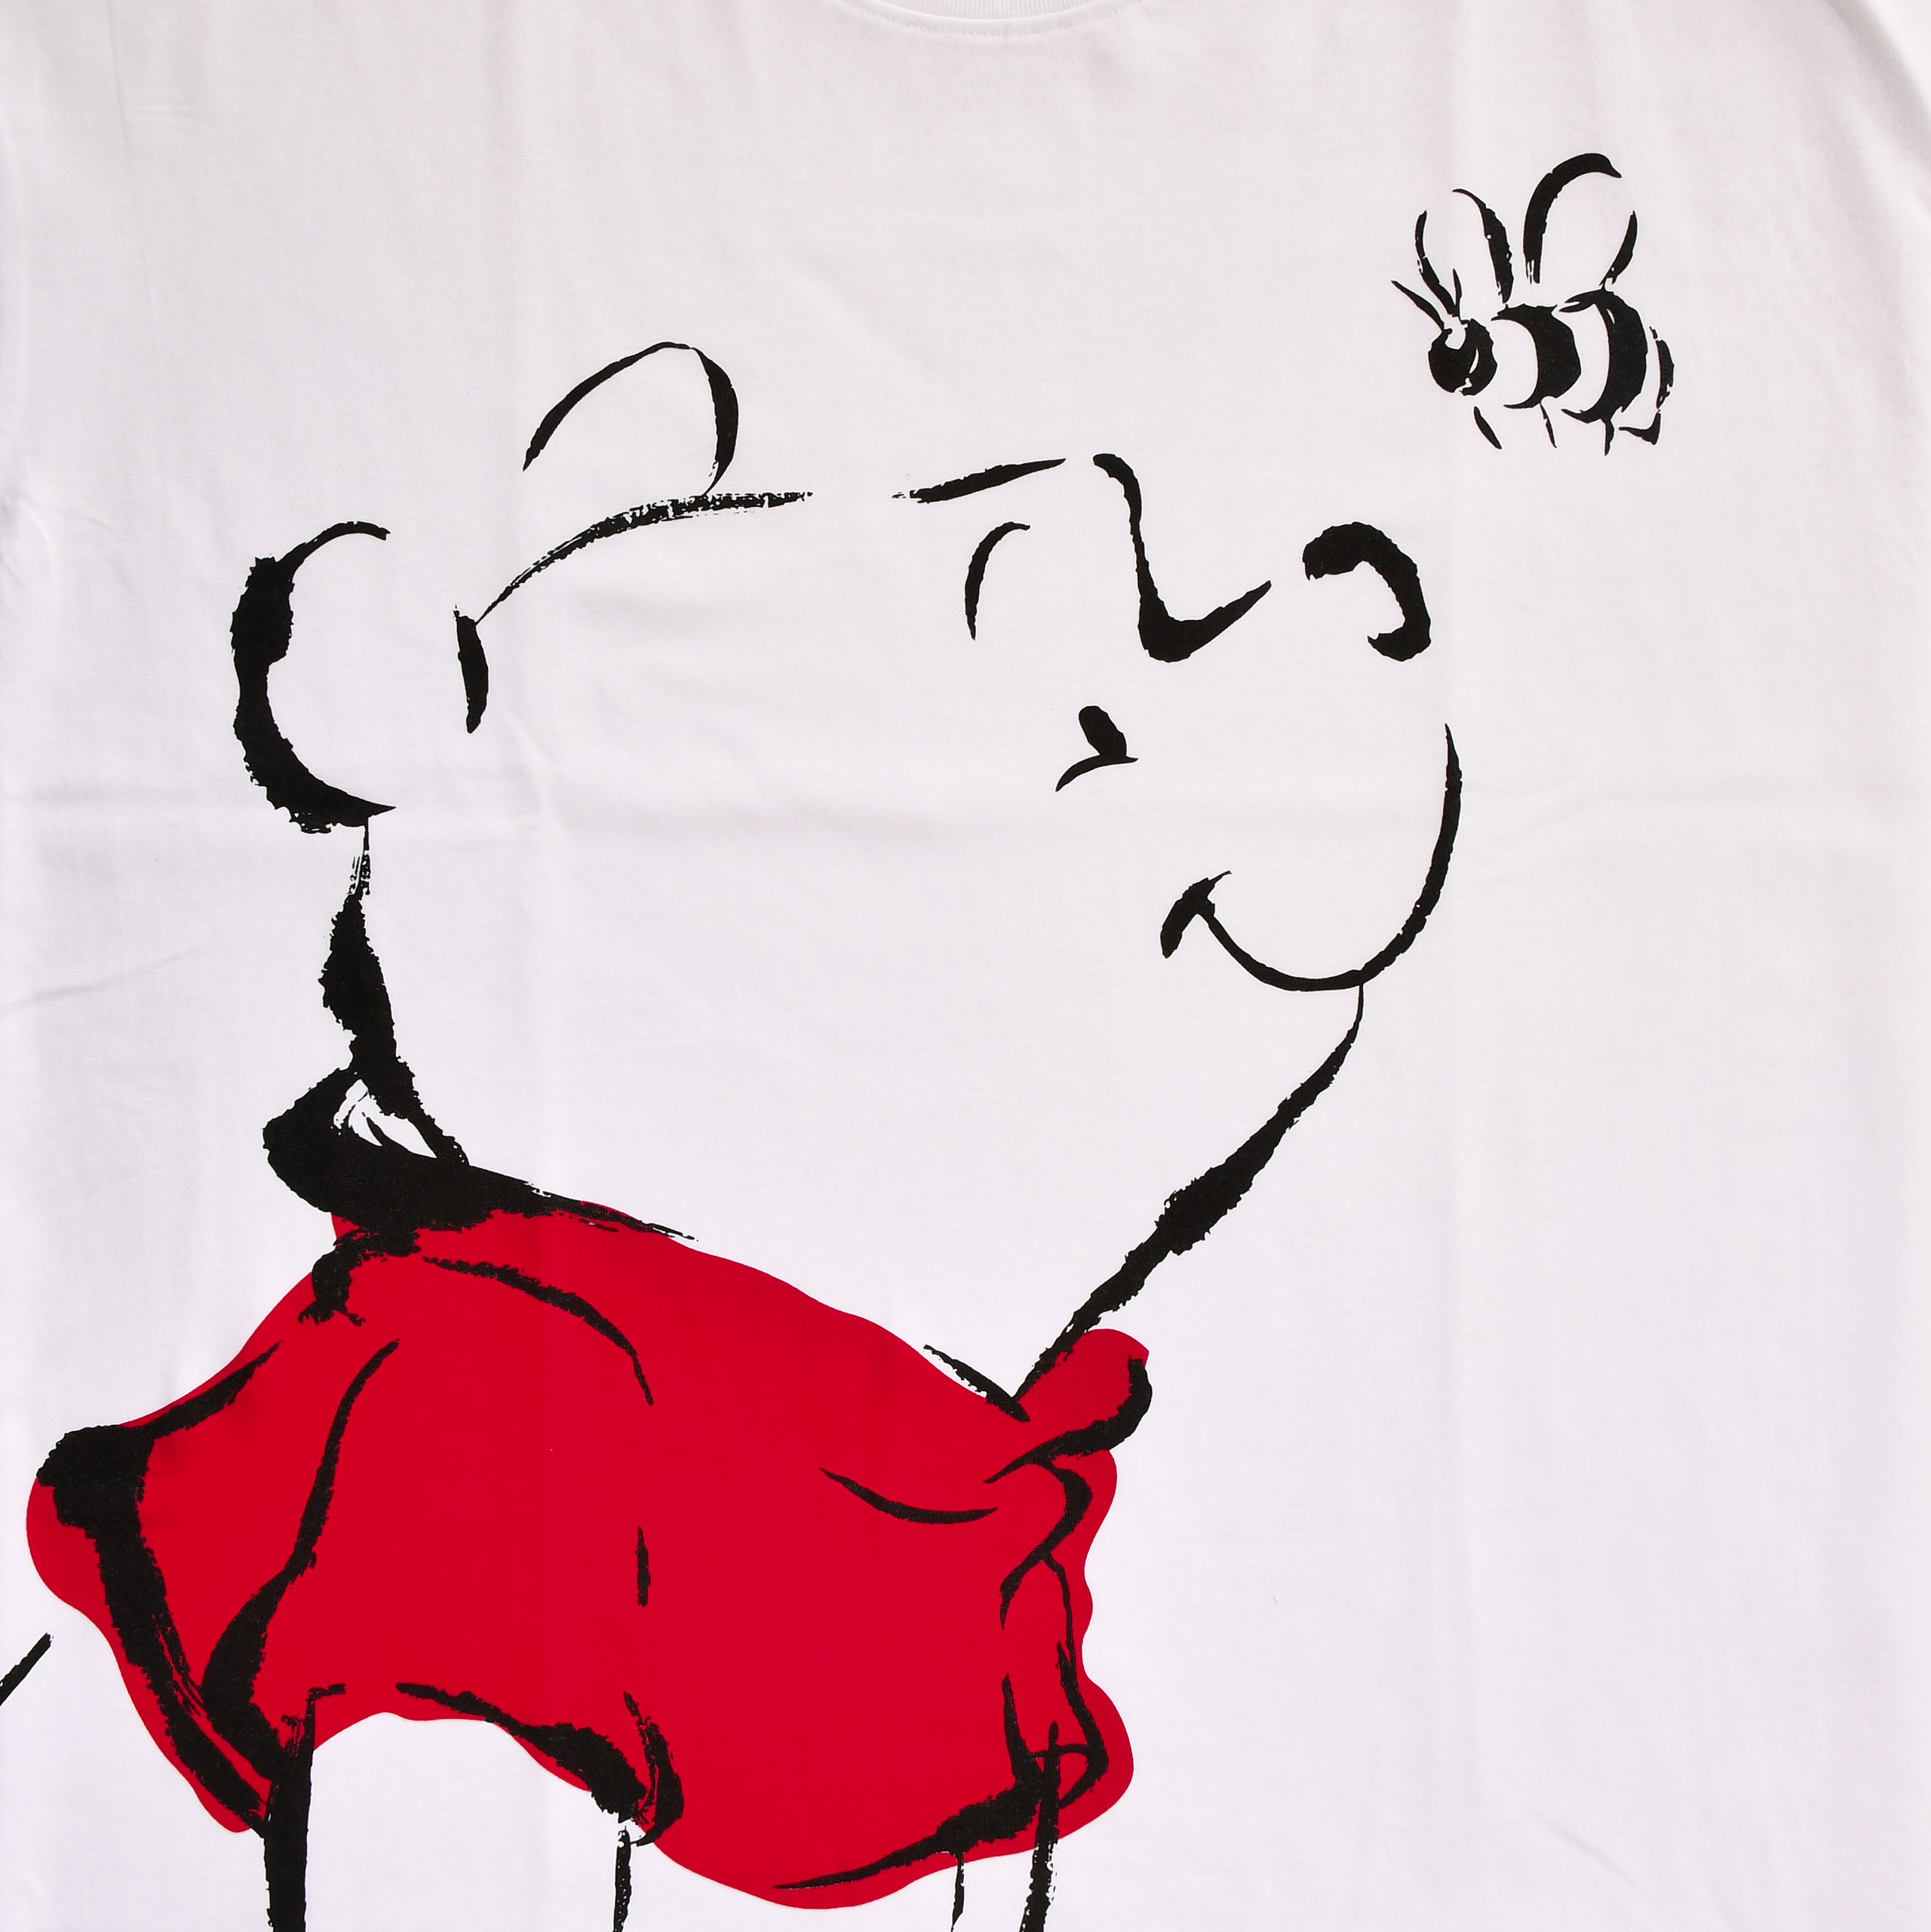 Winnie Puuh - Oversize T-Shirt weiß